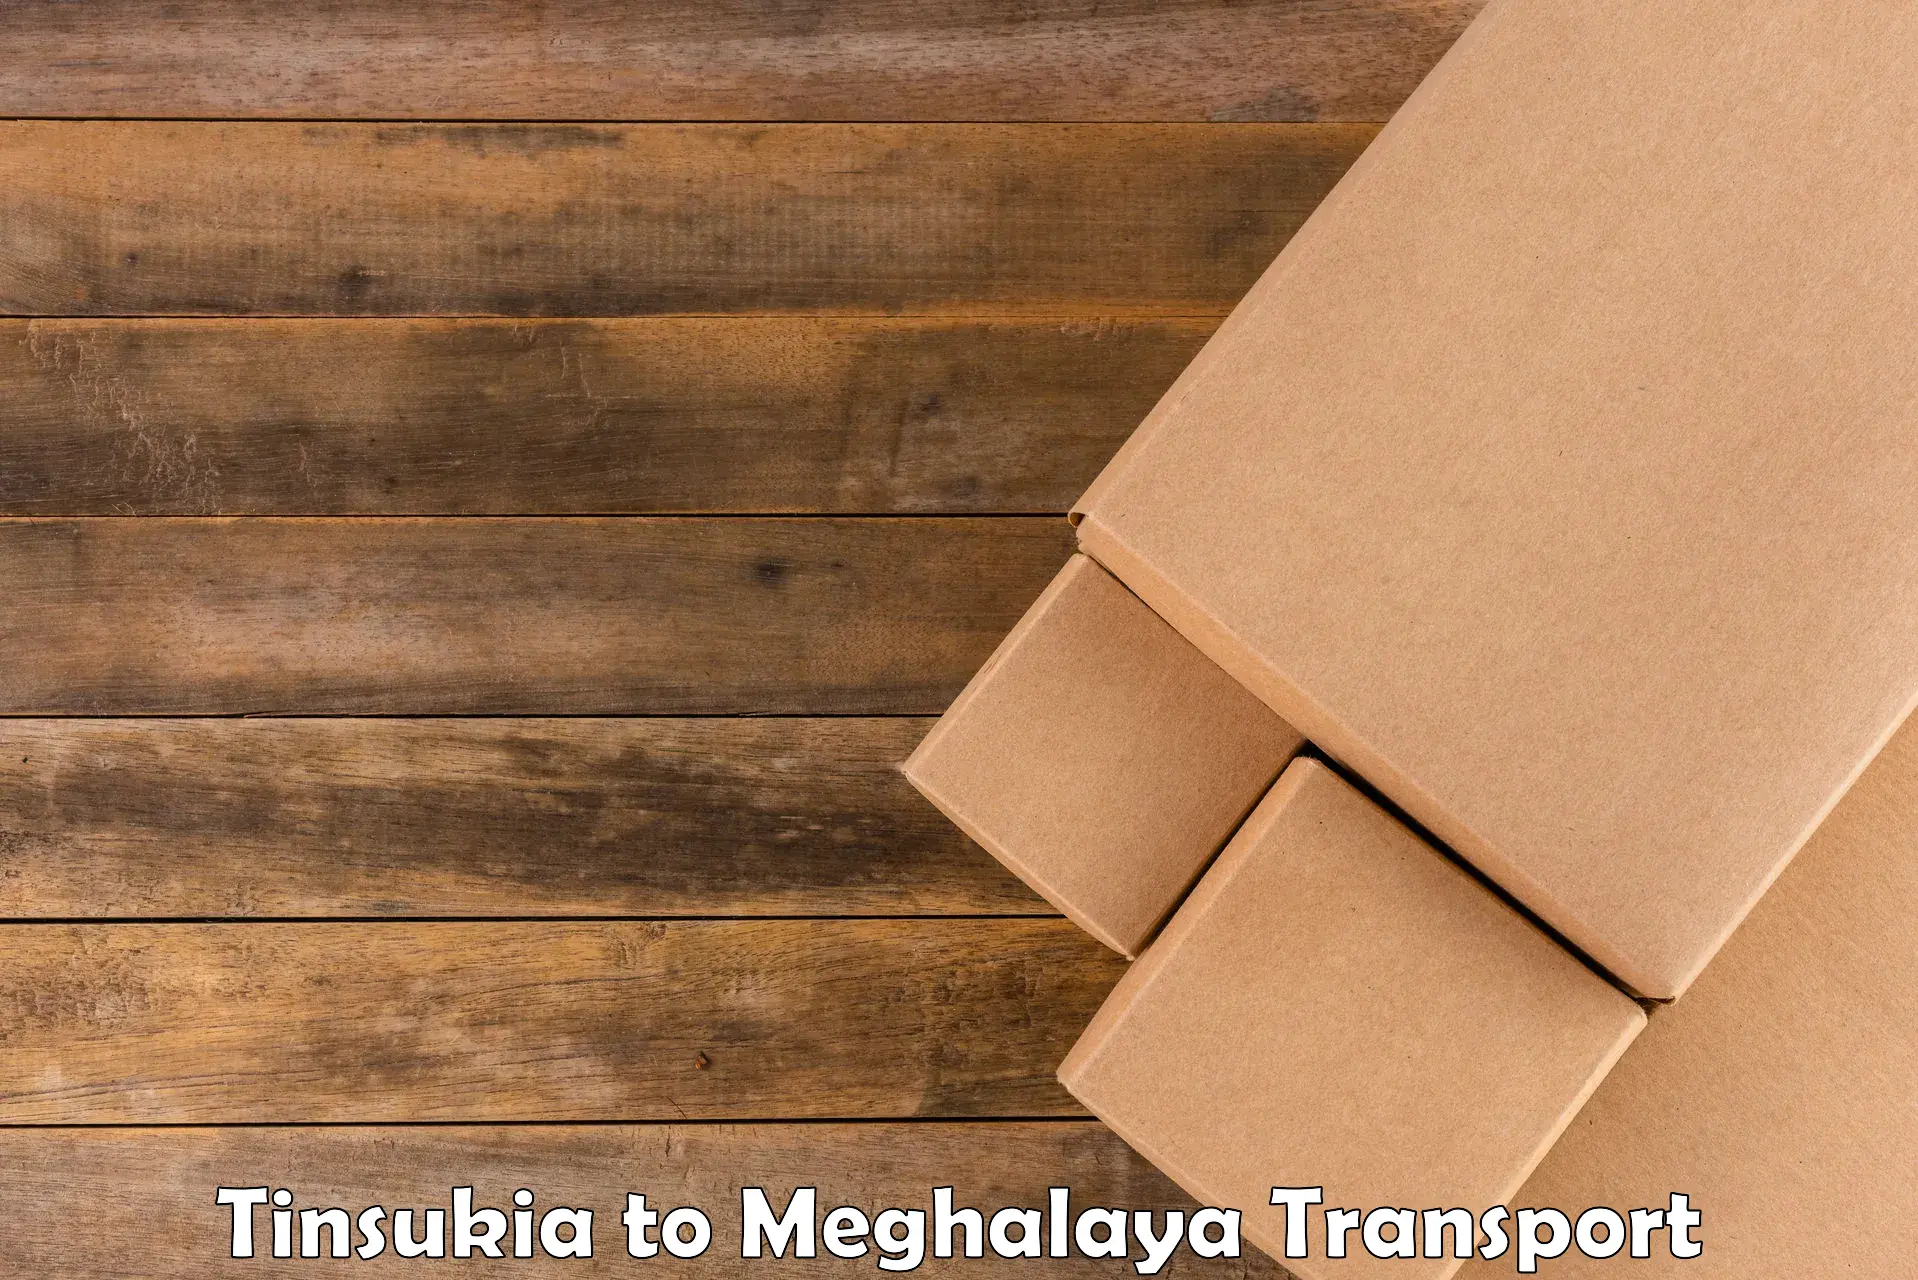 Container transport service Tinsukia to Tikrikilla